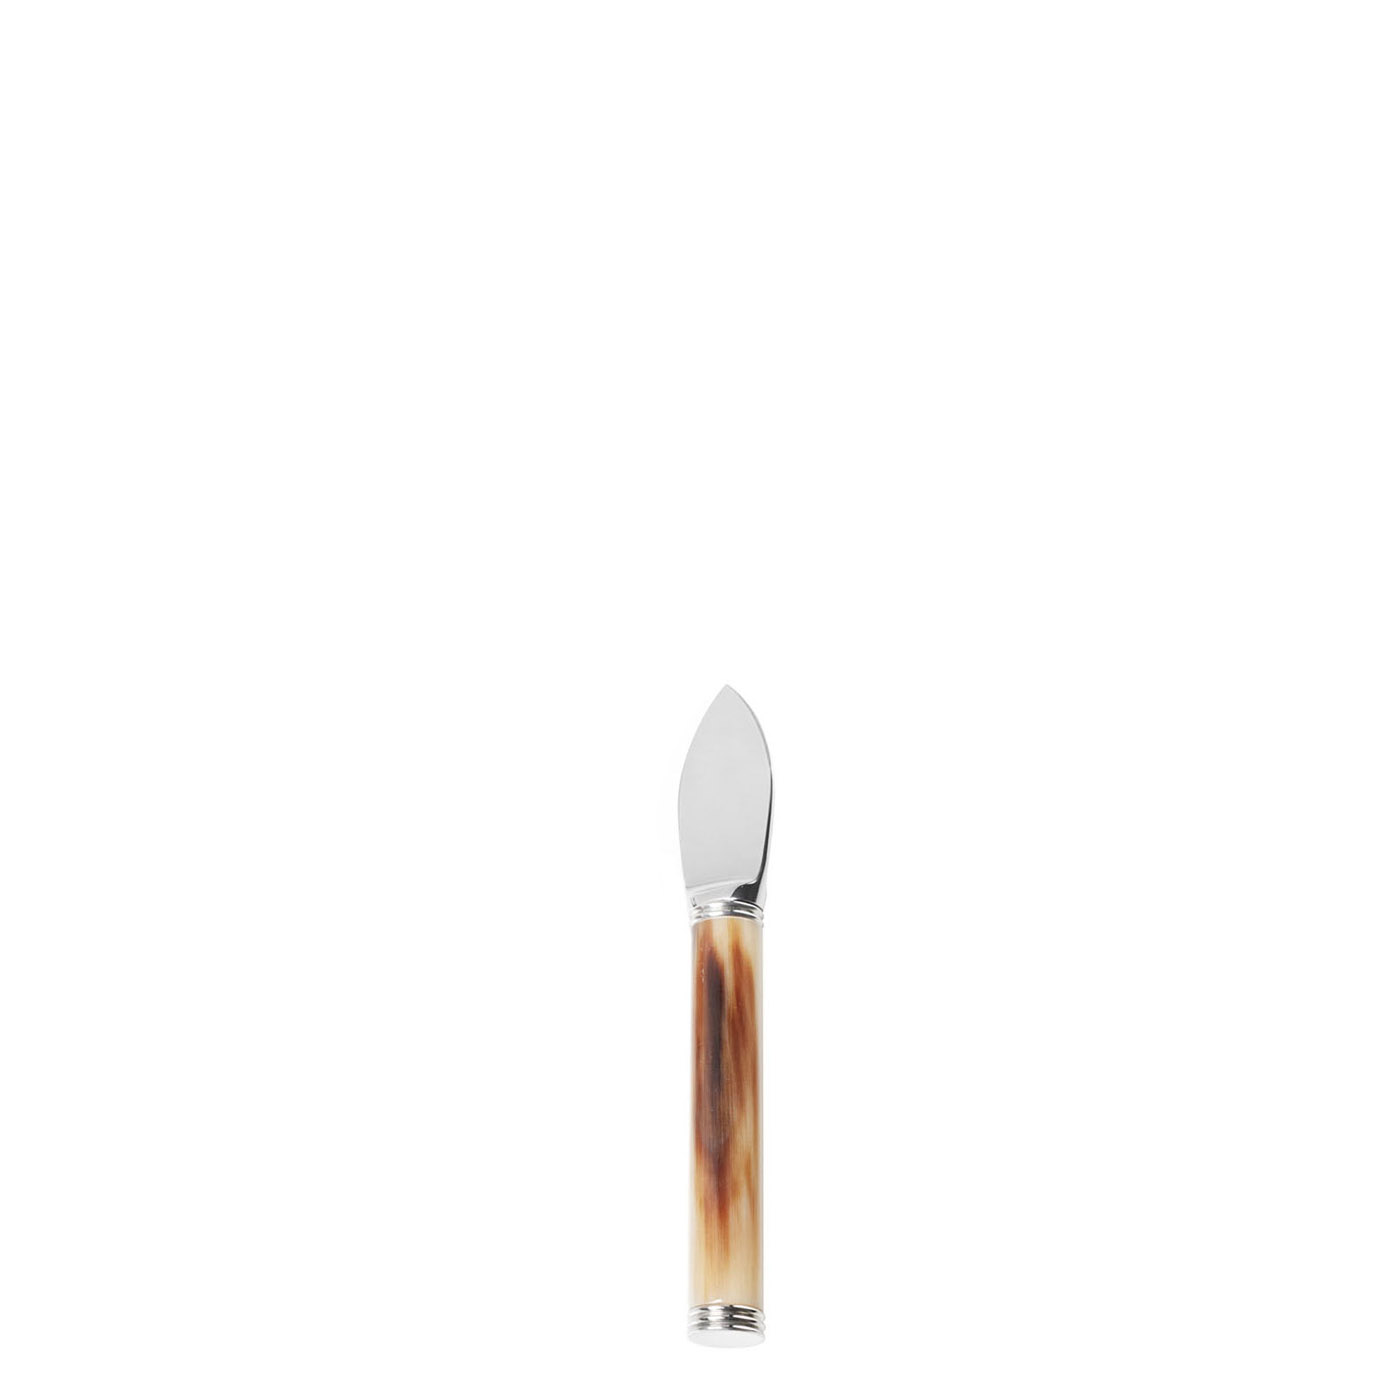 Accessori tavola - Pule coltello per formaggio grana in corno e acciaio inox - Arcahorn